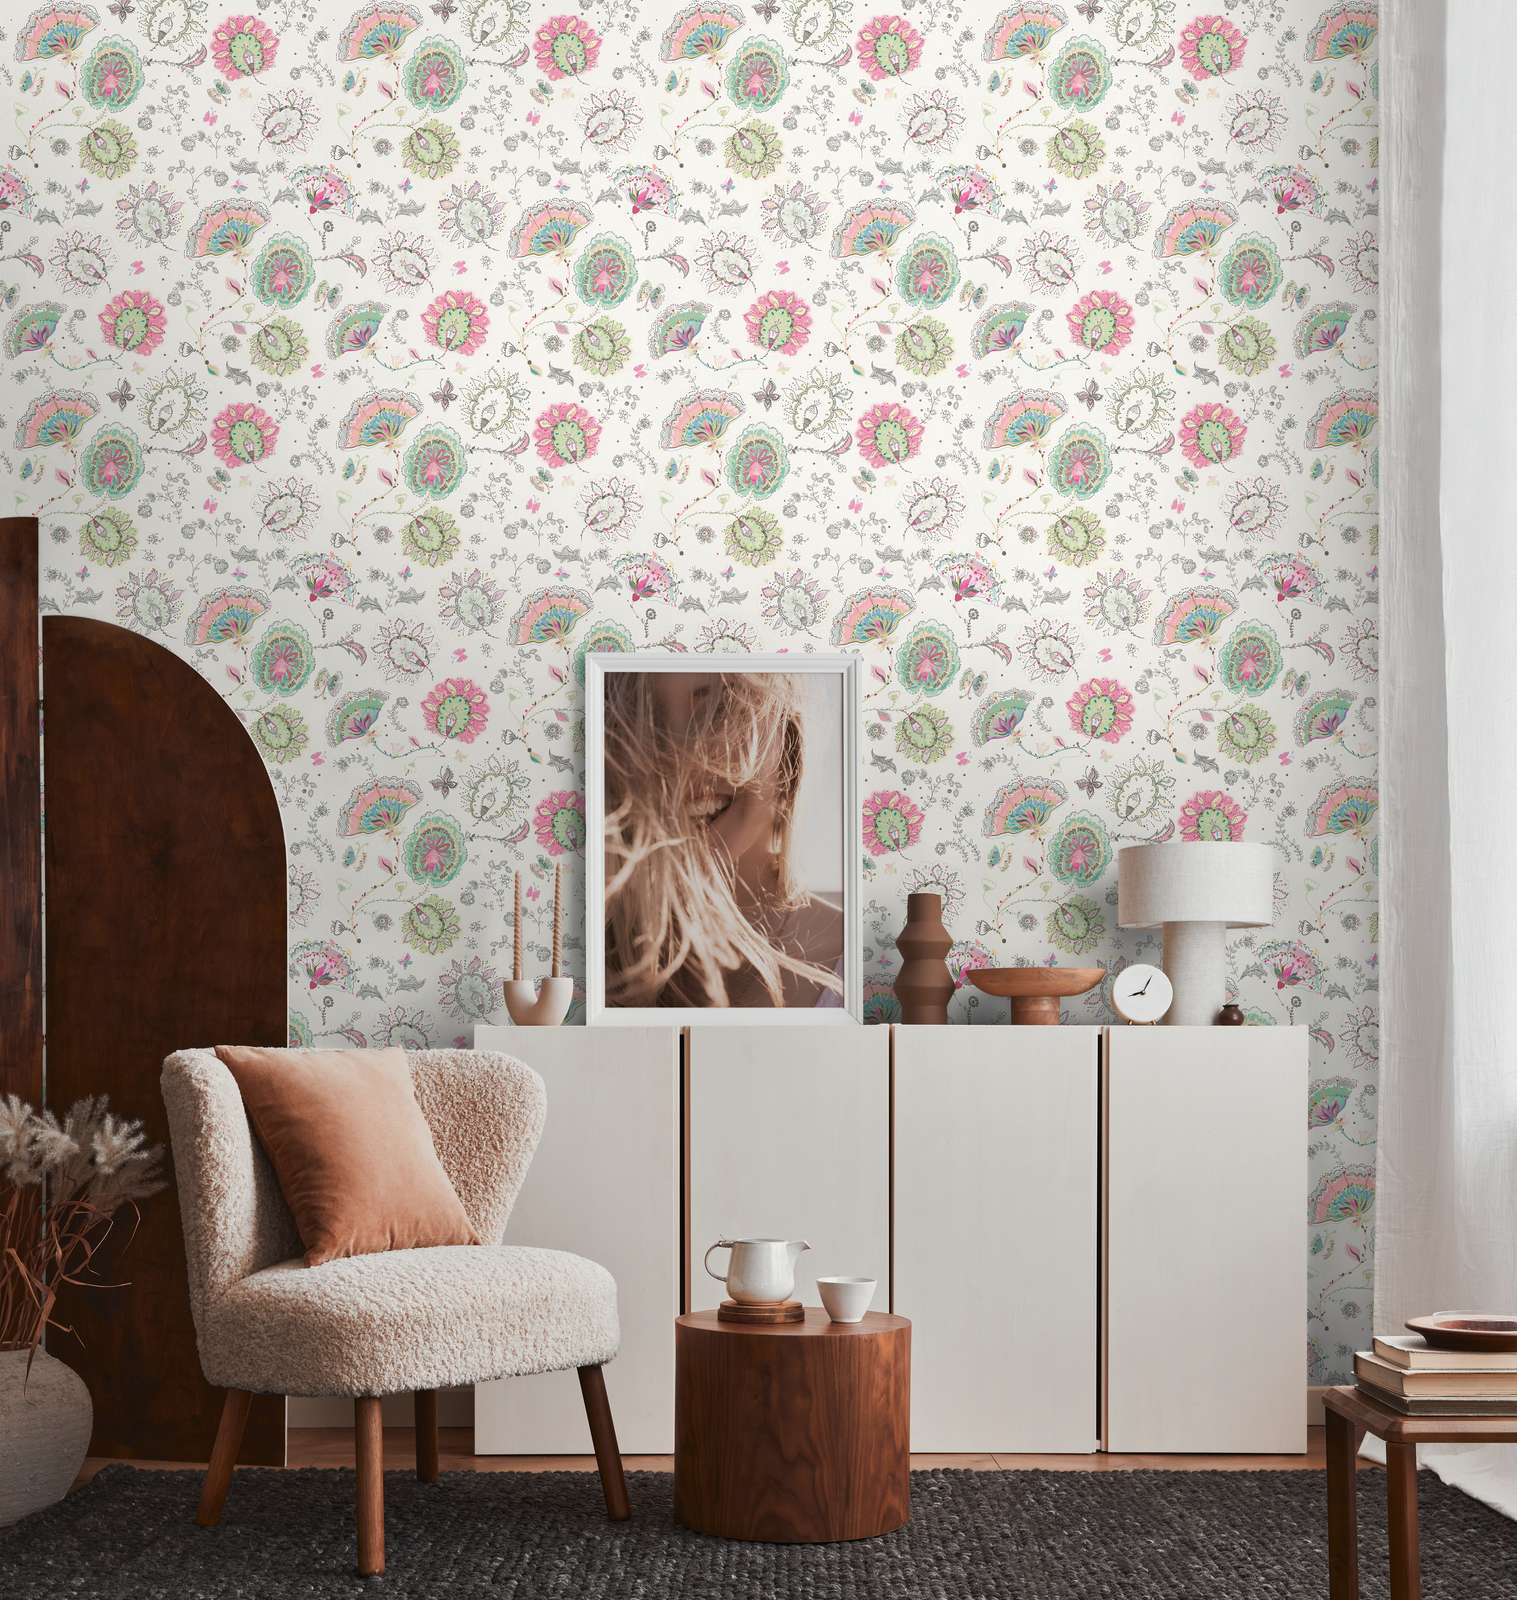             Blumenmuster Tapete in kräftigen Farben – Creme, Grün, Rosa
        